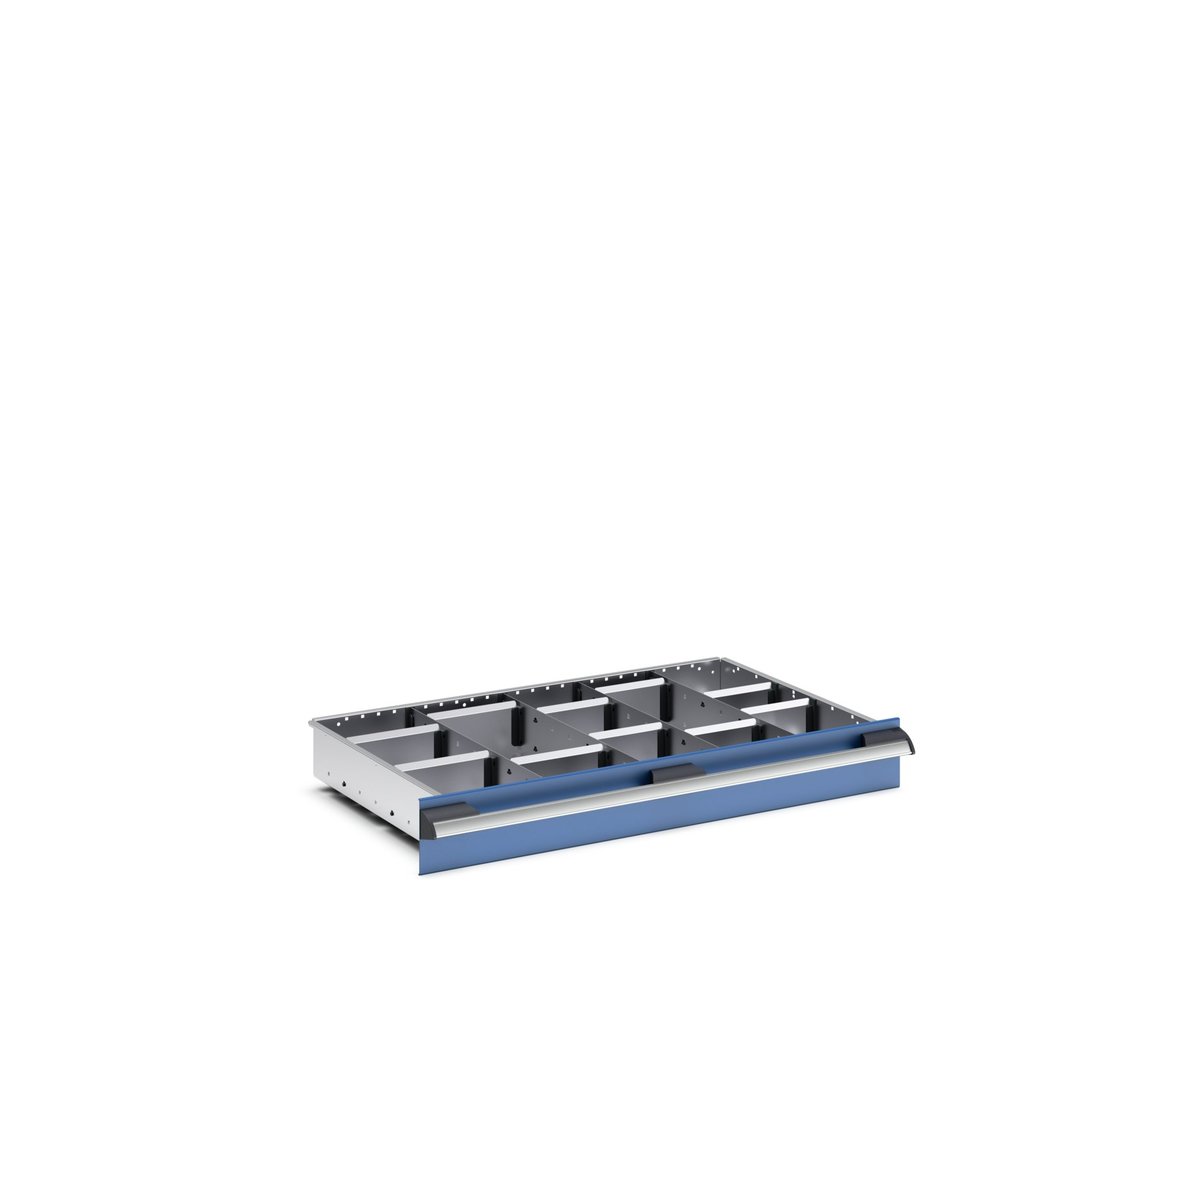 43020655.51 - cubio adjustable divider kit